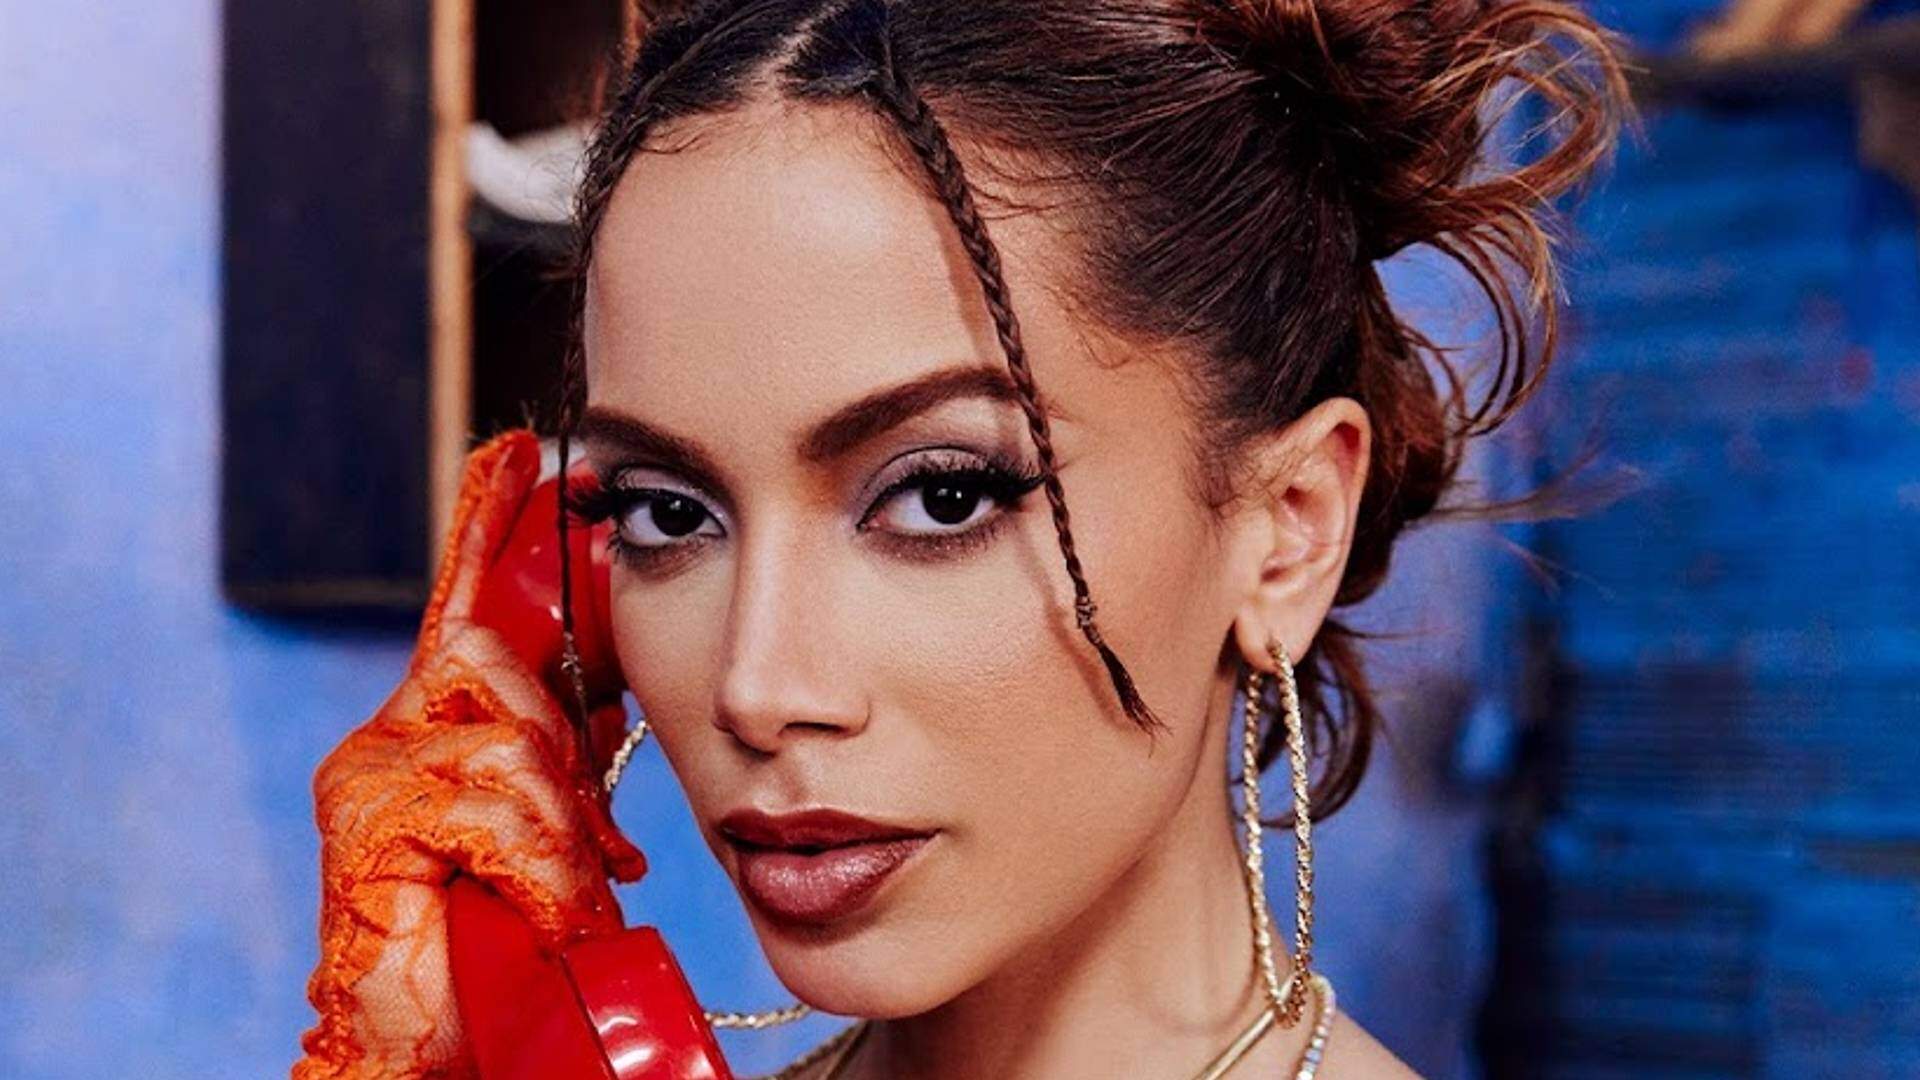 Anitta lança novo EP dedicado ao funk melody com clipe quente que retrata cantora em cenas polêmicas no RJ - Metropolitana FM